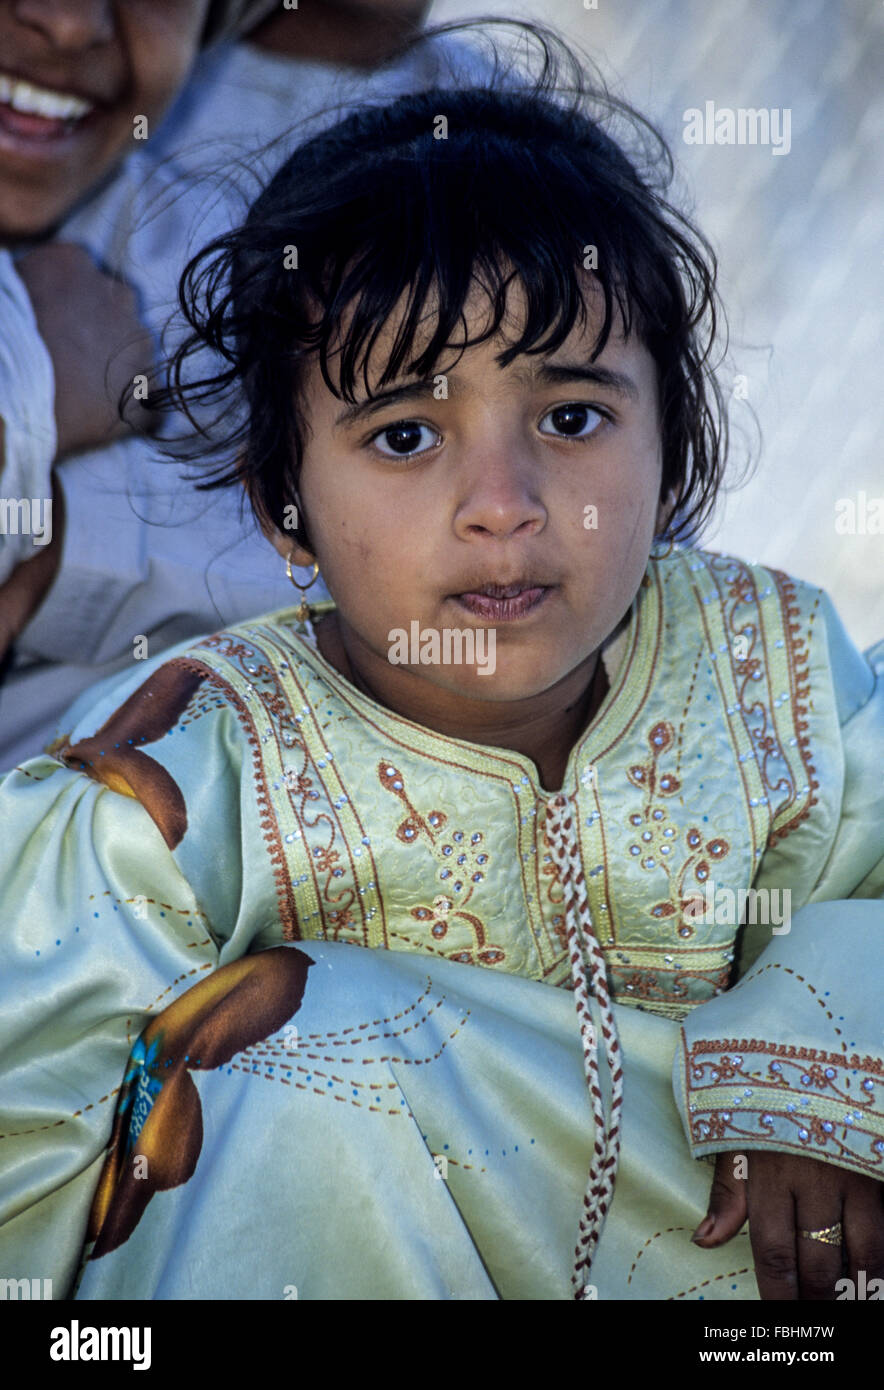 Sur, Oman. Giovane ragazza dell'Oman. Foto Stock